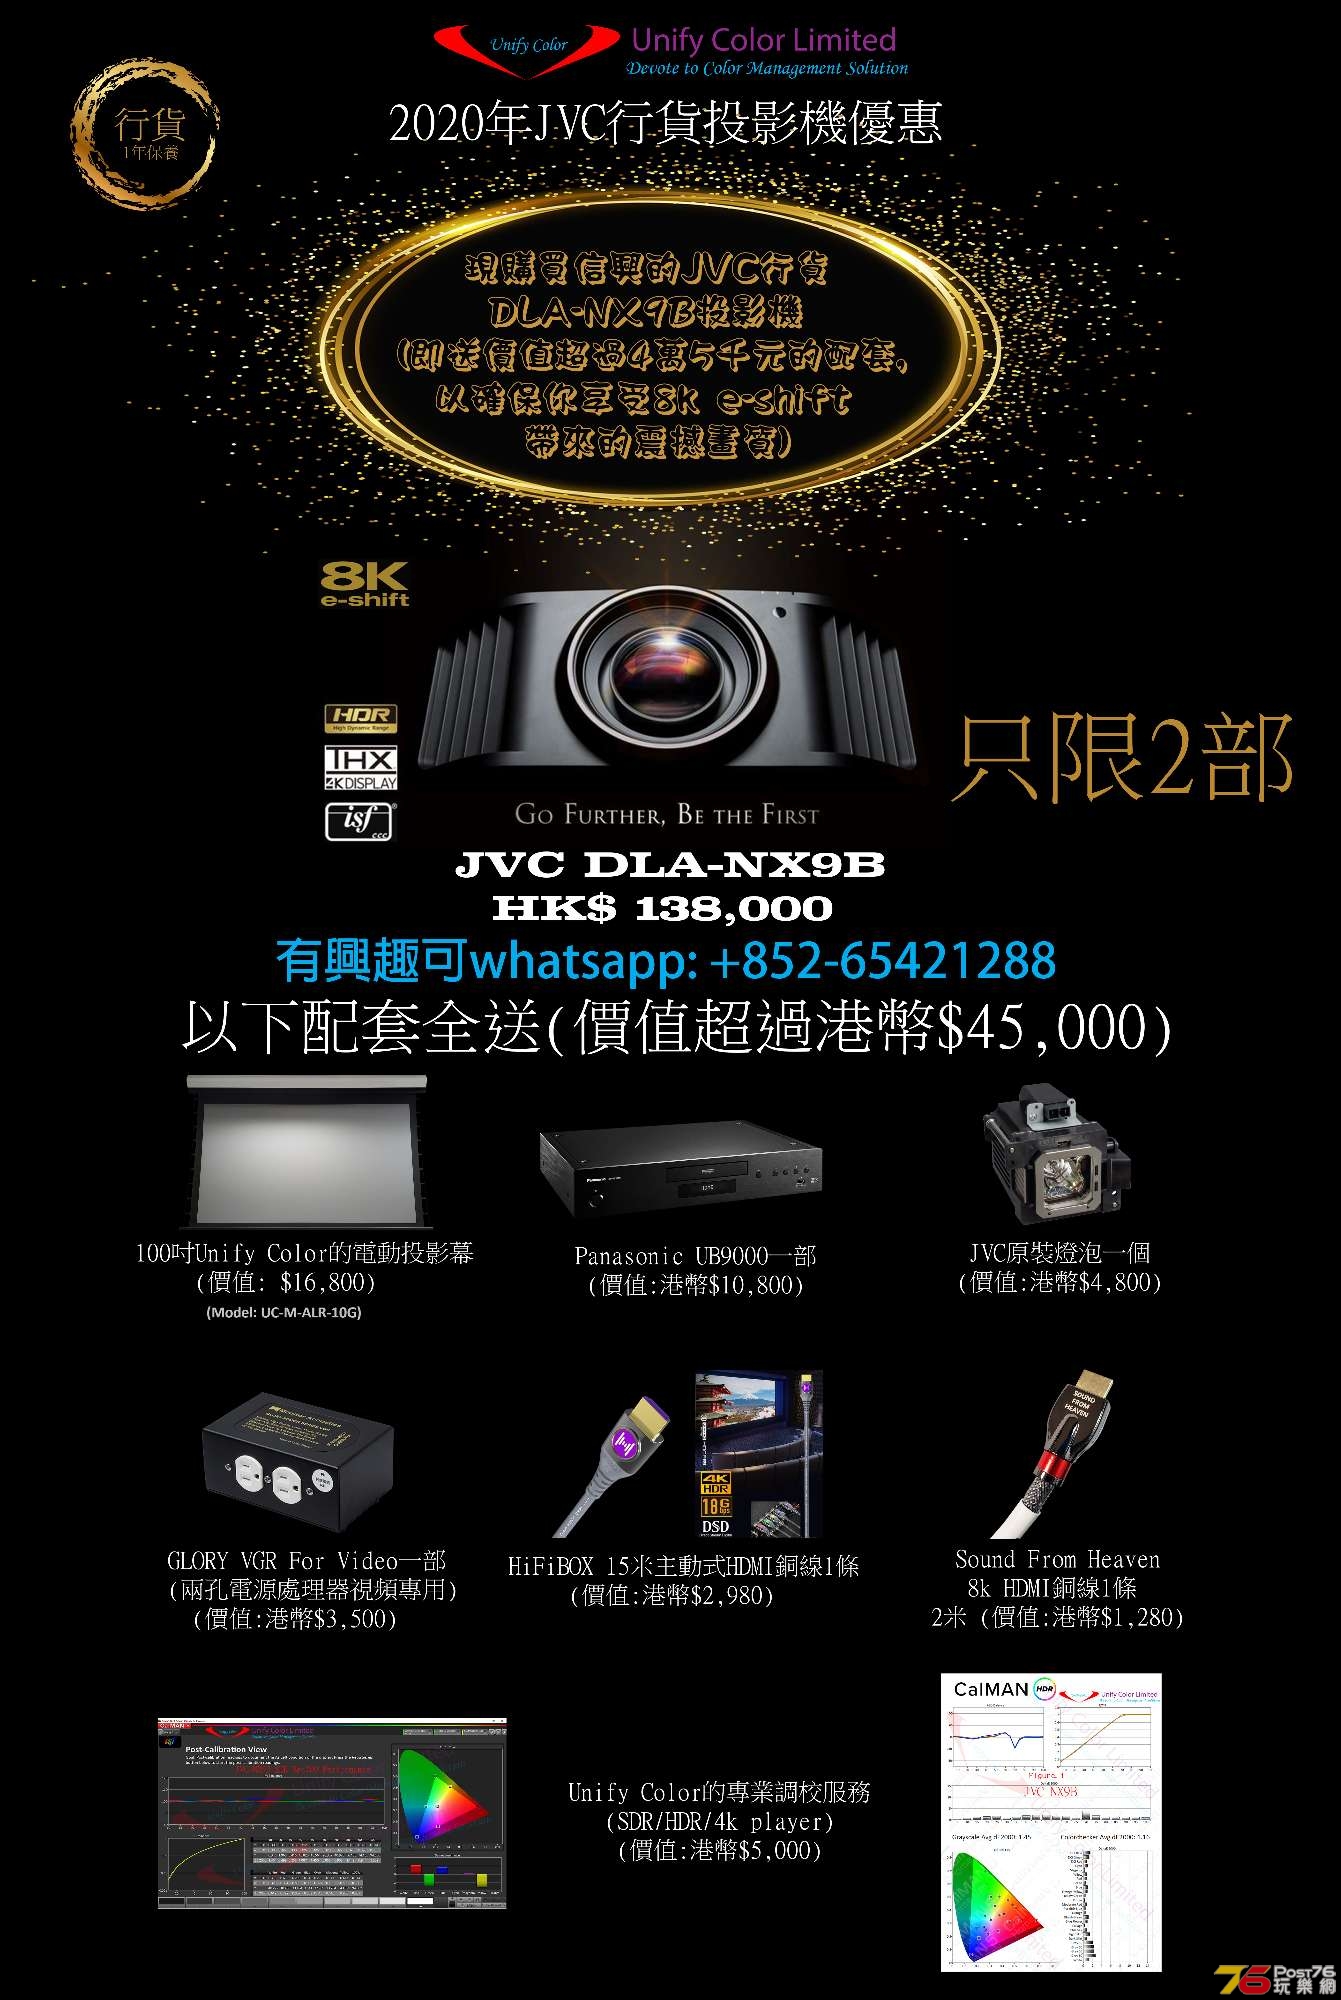 N9 promotion_202008.jpg